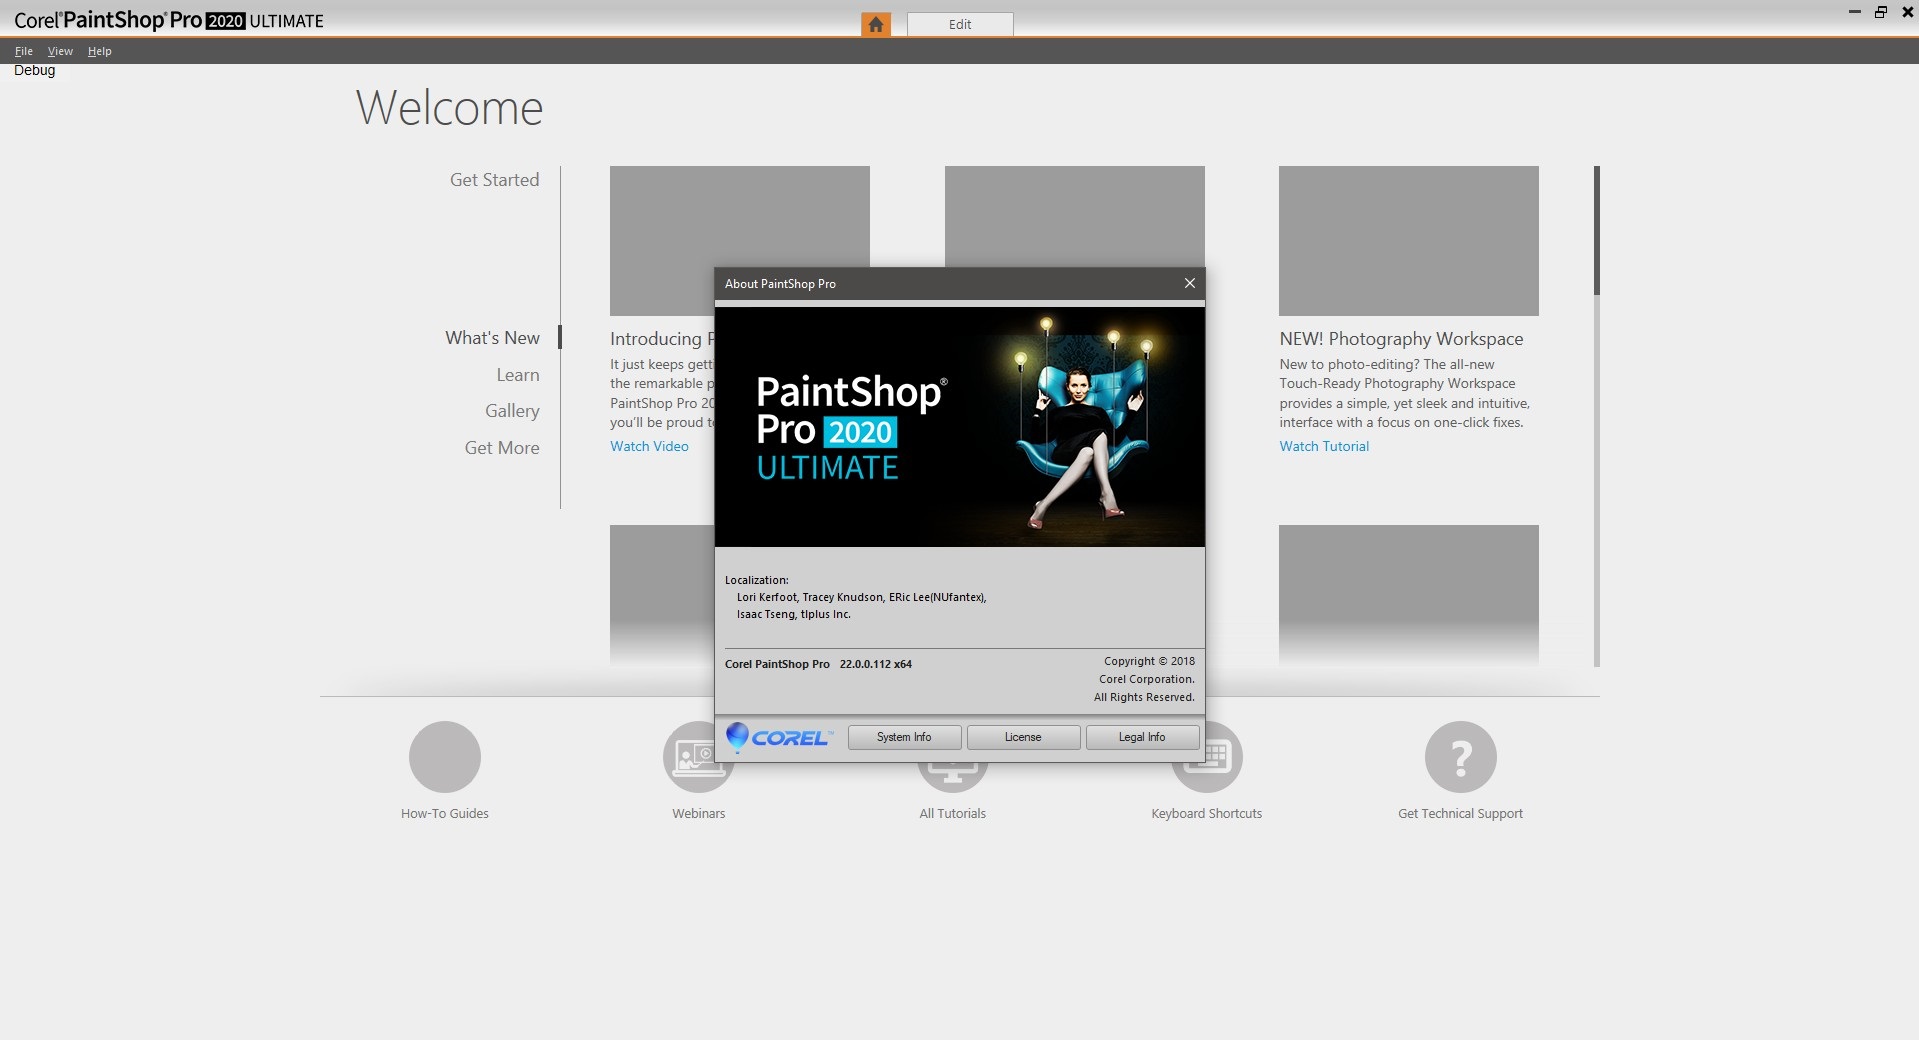 Free Download for Windows PC Corel PaintShop Pro Ultimate 2020